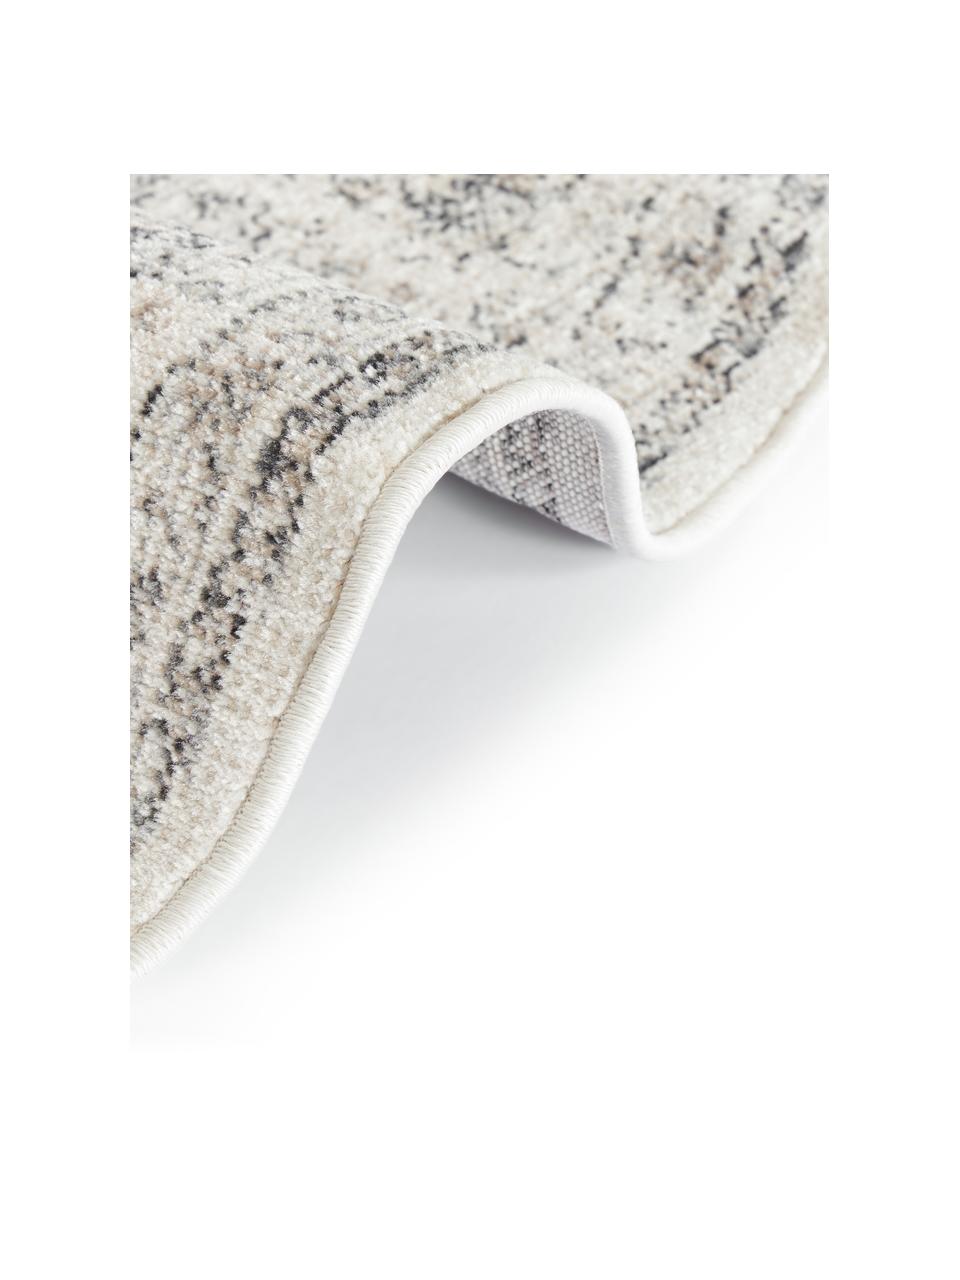 Kulatý interiérový/exteriérový koberec Marrakesch, 100 % polypropylen

Materiál použitý v tomto produktu byl testován na škodlivé látky a certifikován podle STANDARD 100 od OEKO-TEX®, 21.HTR.82511, Hohenstein HTTI., Béžová, šedá, Ø 160 cm (velikost L)